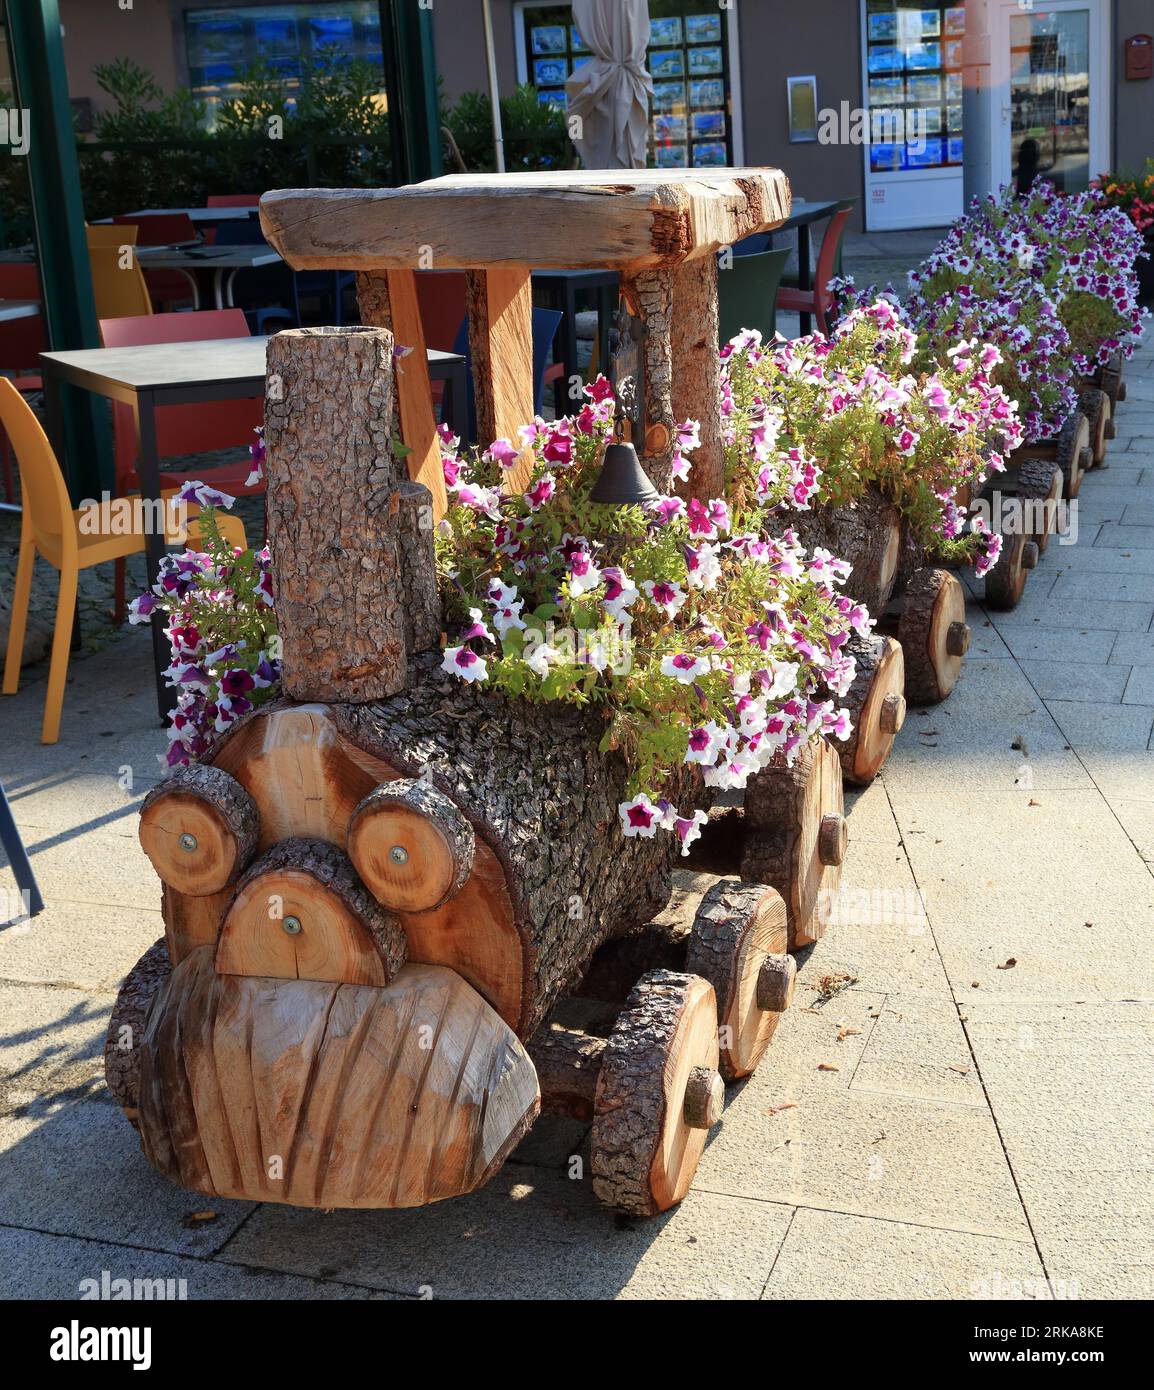 Wooden flower train in Colico town, Lake Como (Lago di Como), Italy. Ristorante Il Bizzarro restaurant. Choo Choo Train Planter Stock Photo